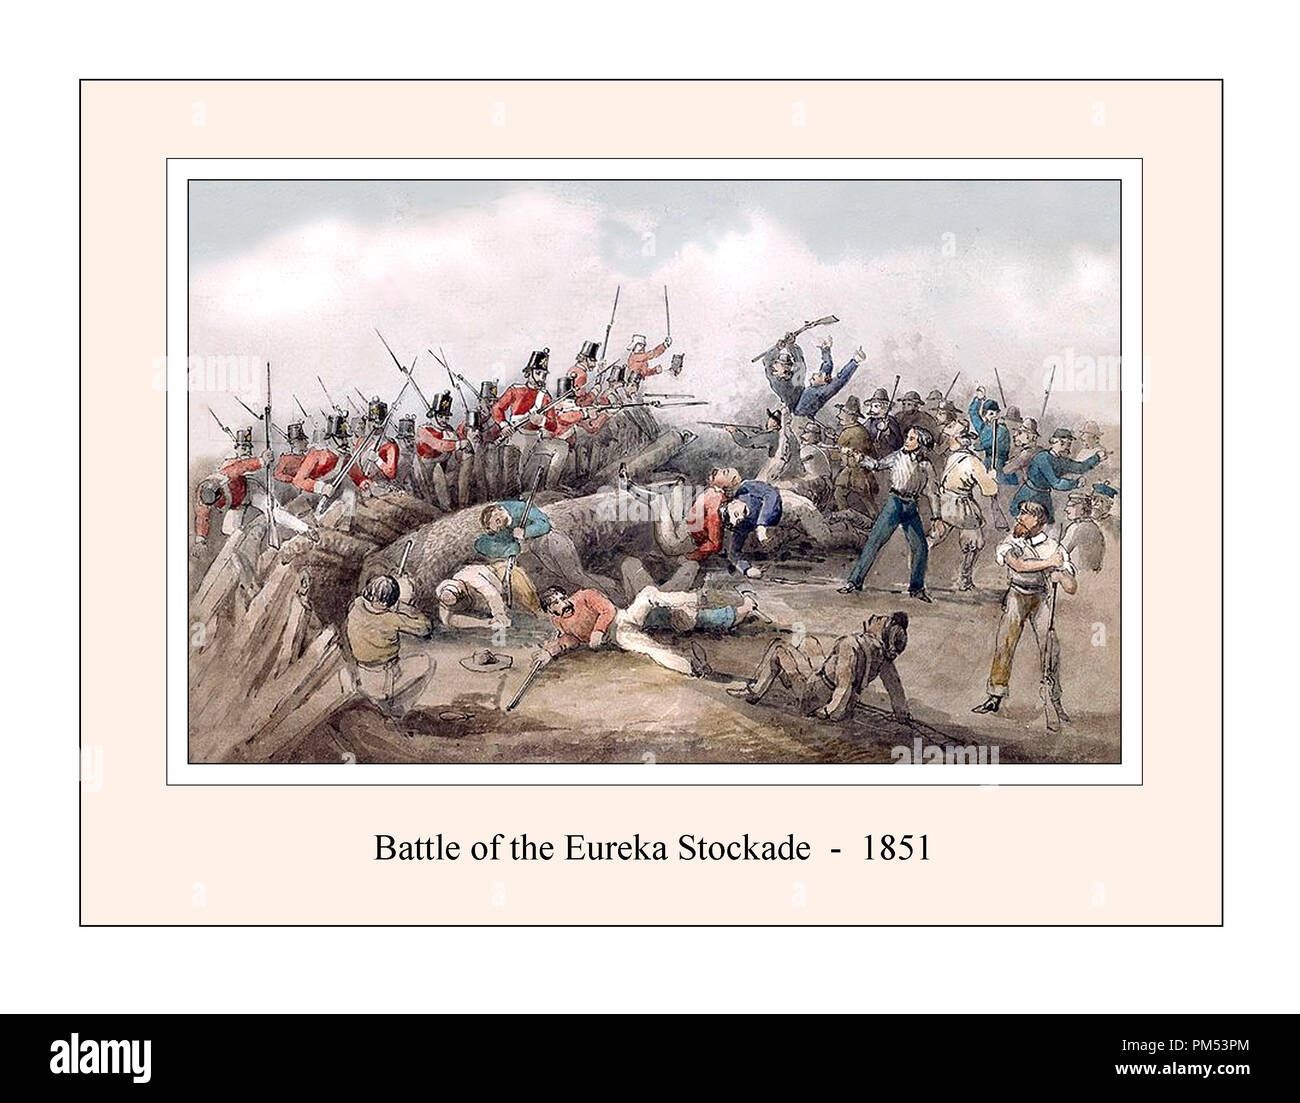 Schlacht von Eureka Stockade 1851 von J. B. Henderson. Zurücksetzen und aktualisiert Stockfoto